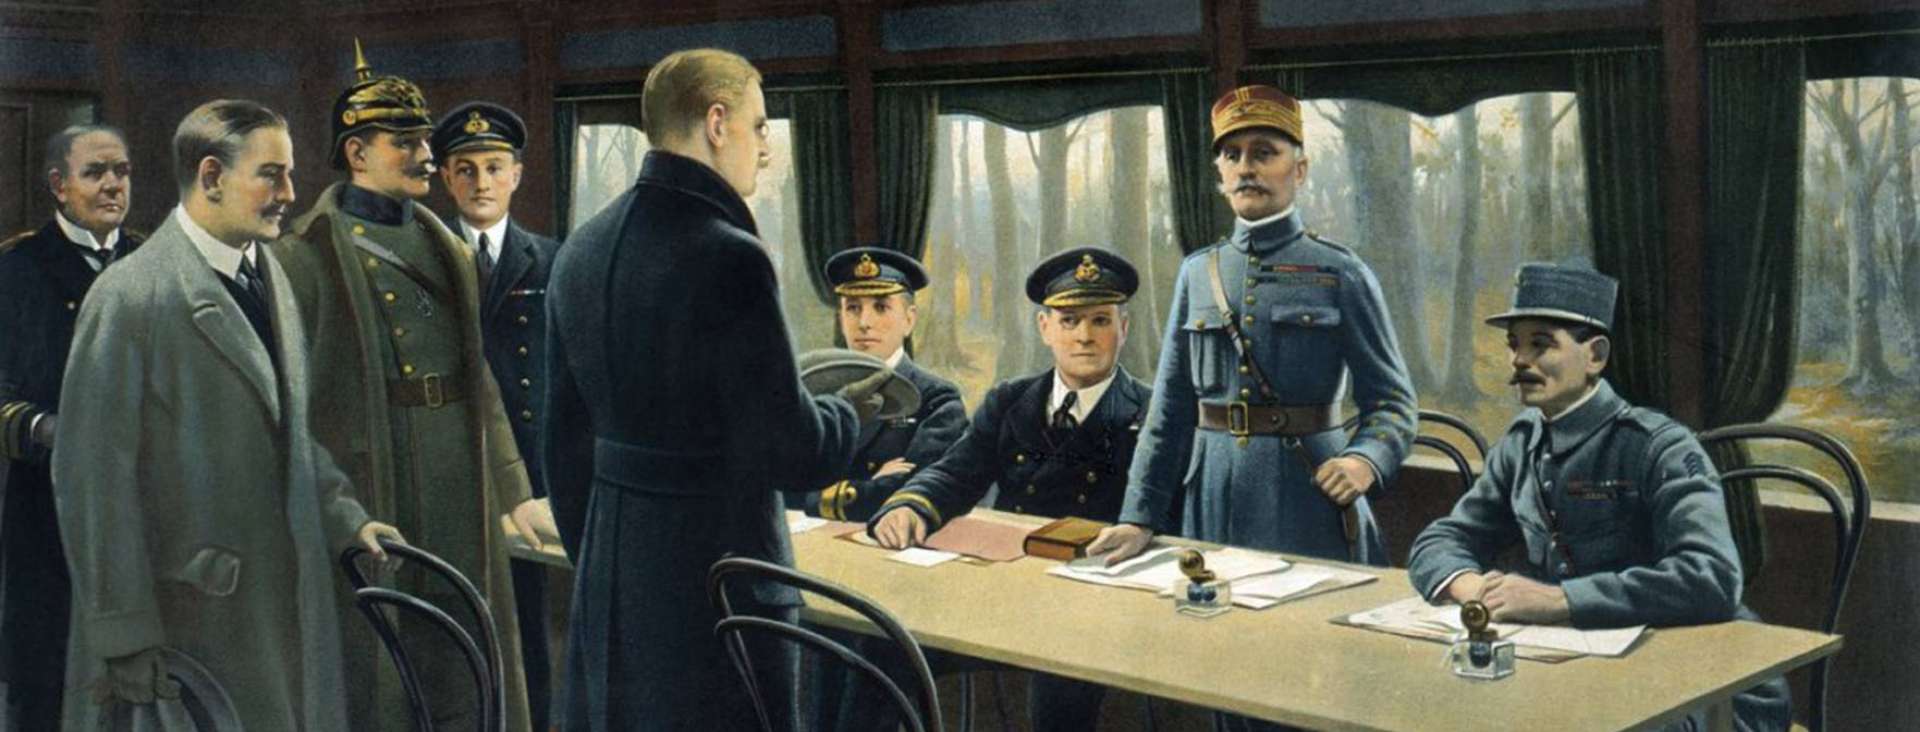 Tableau de l'armistice de 1918